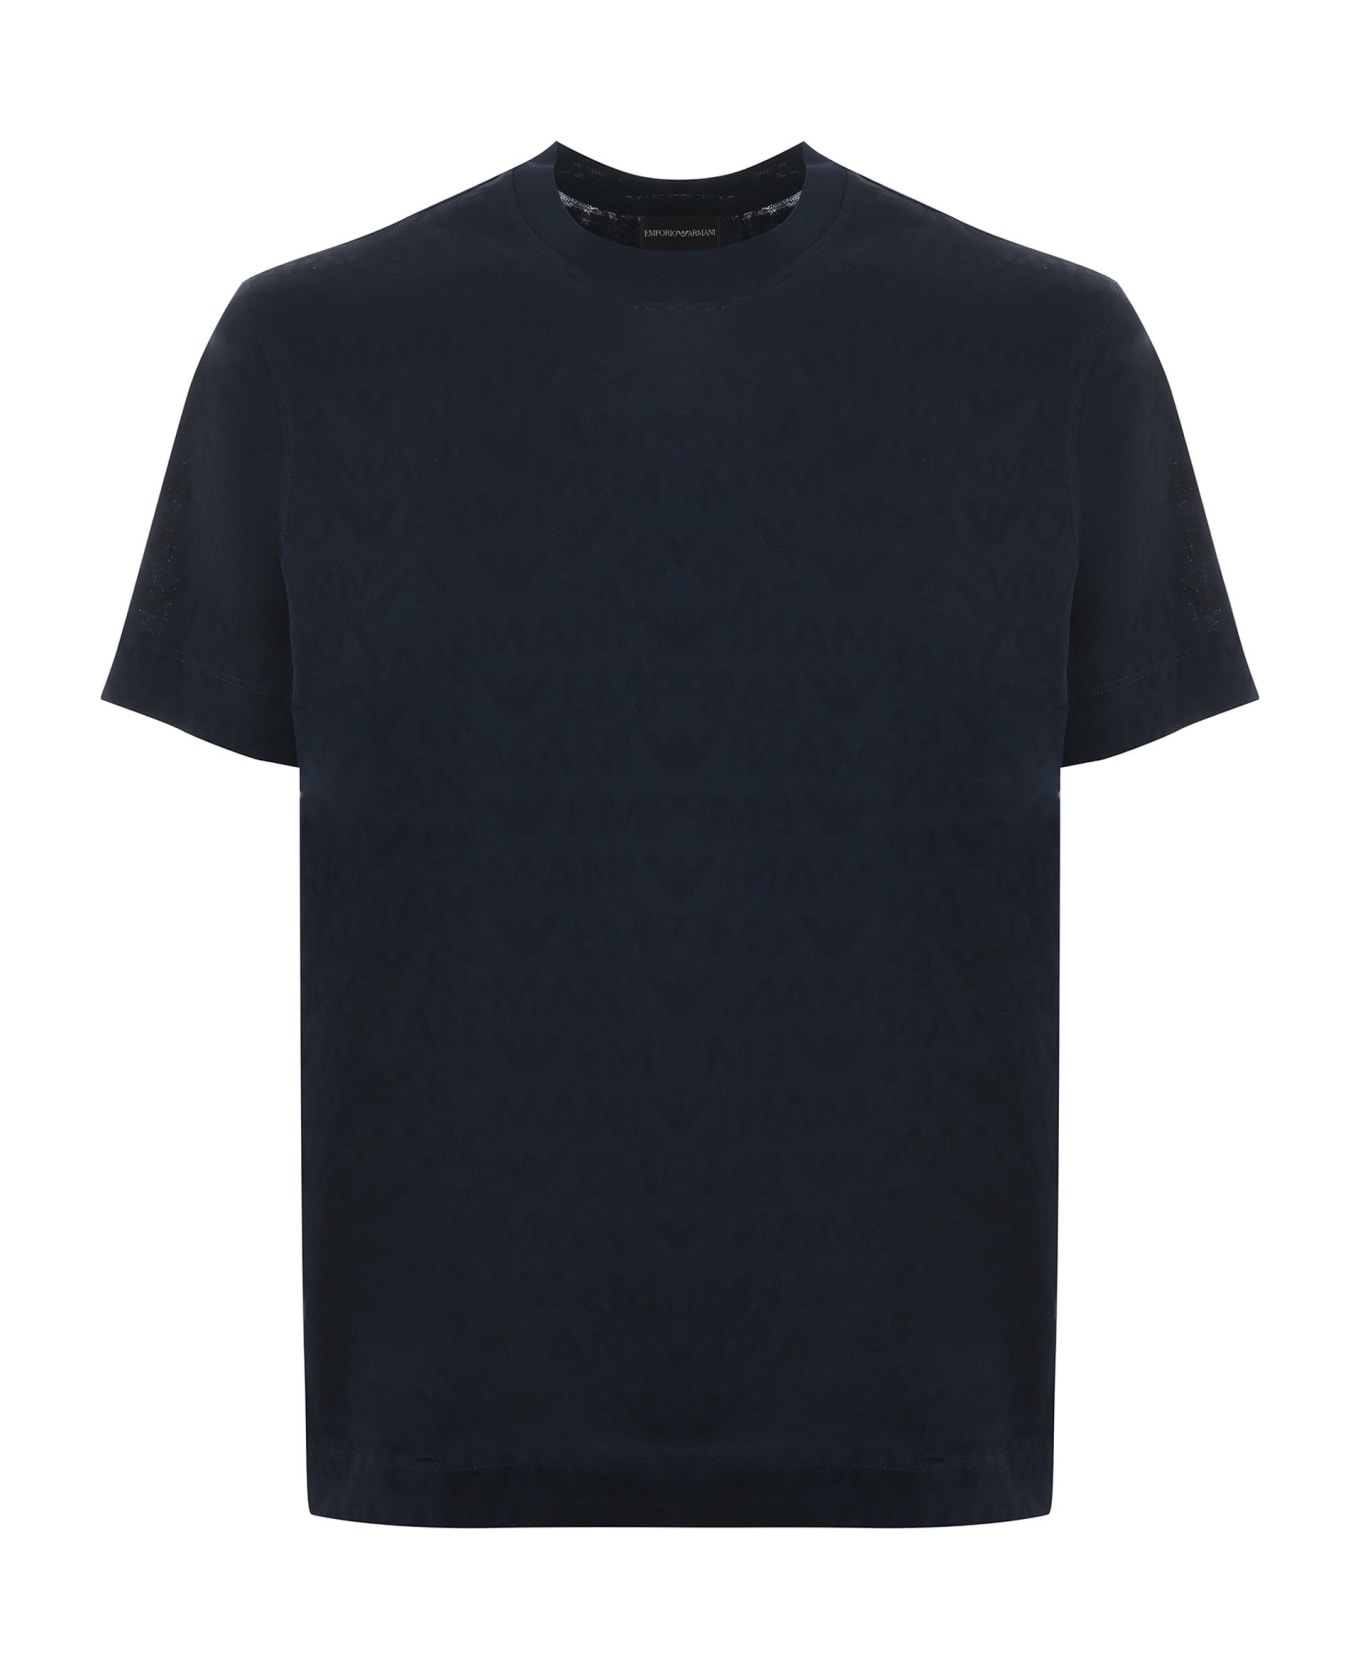 Emporio Armani T-shirt - Blu scuro シャツ